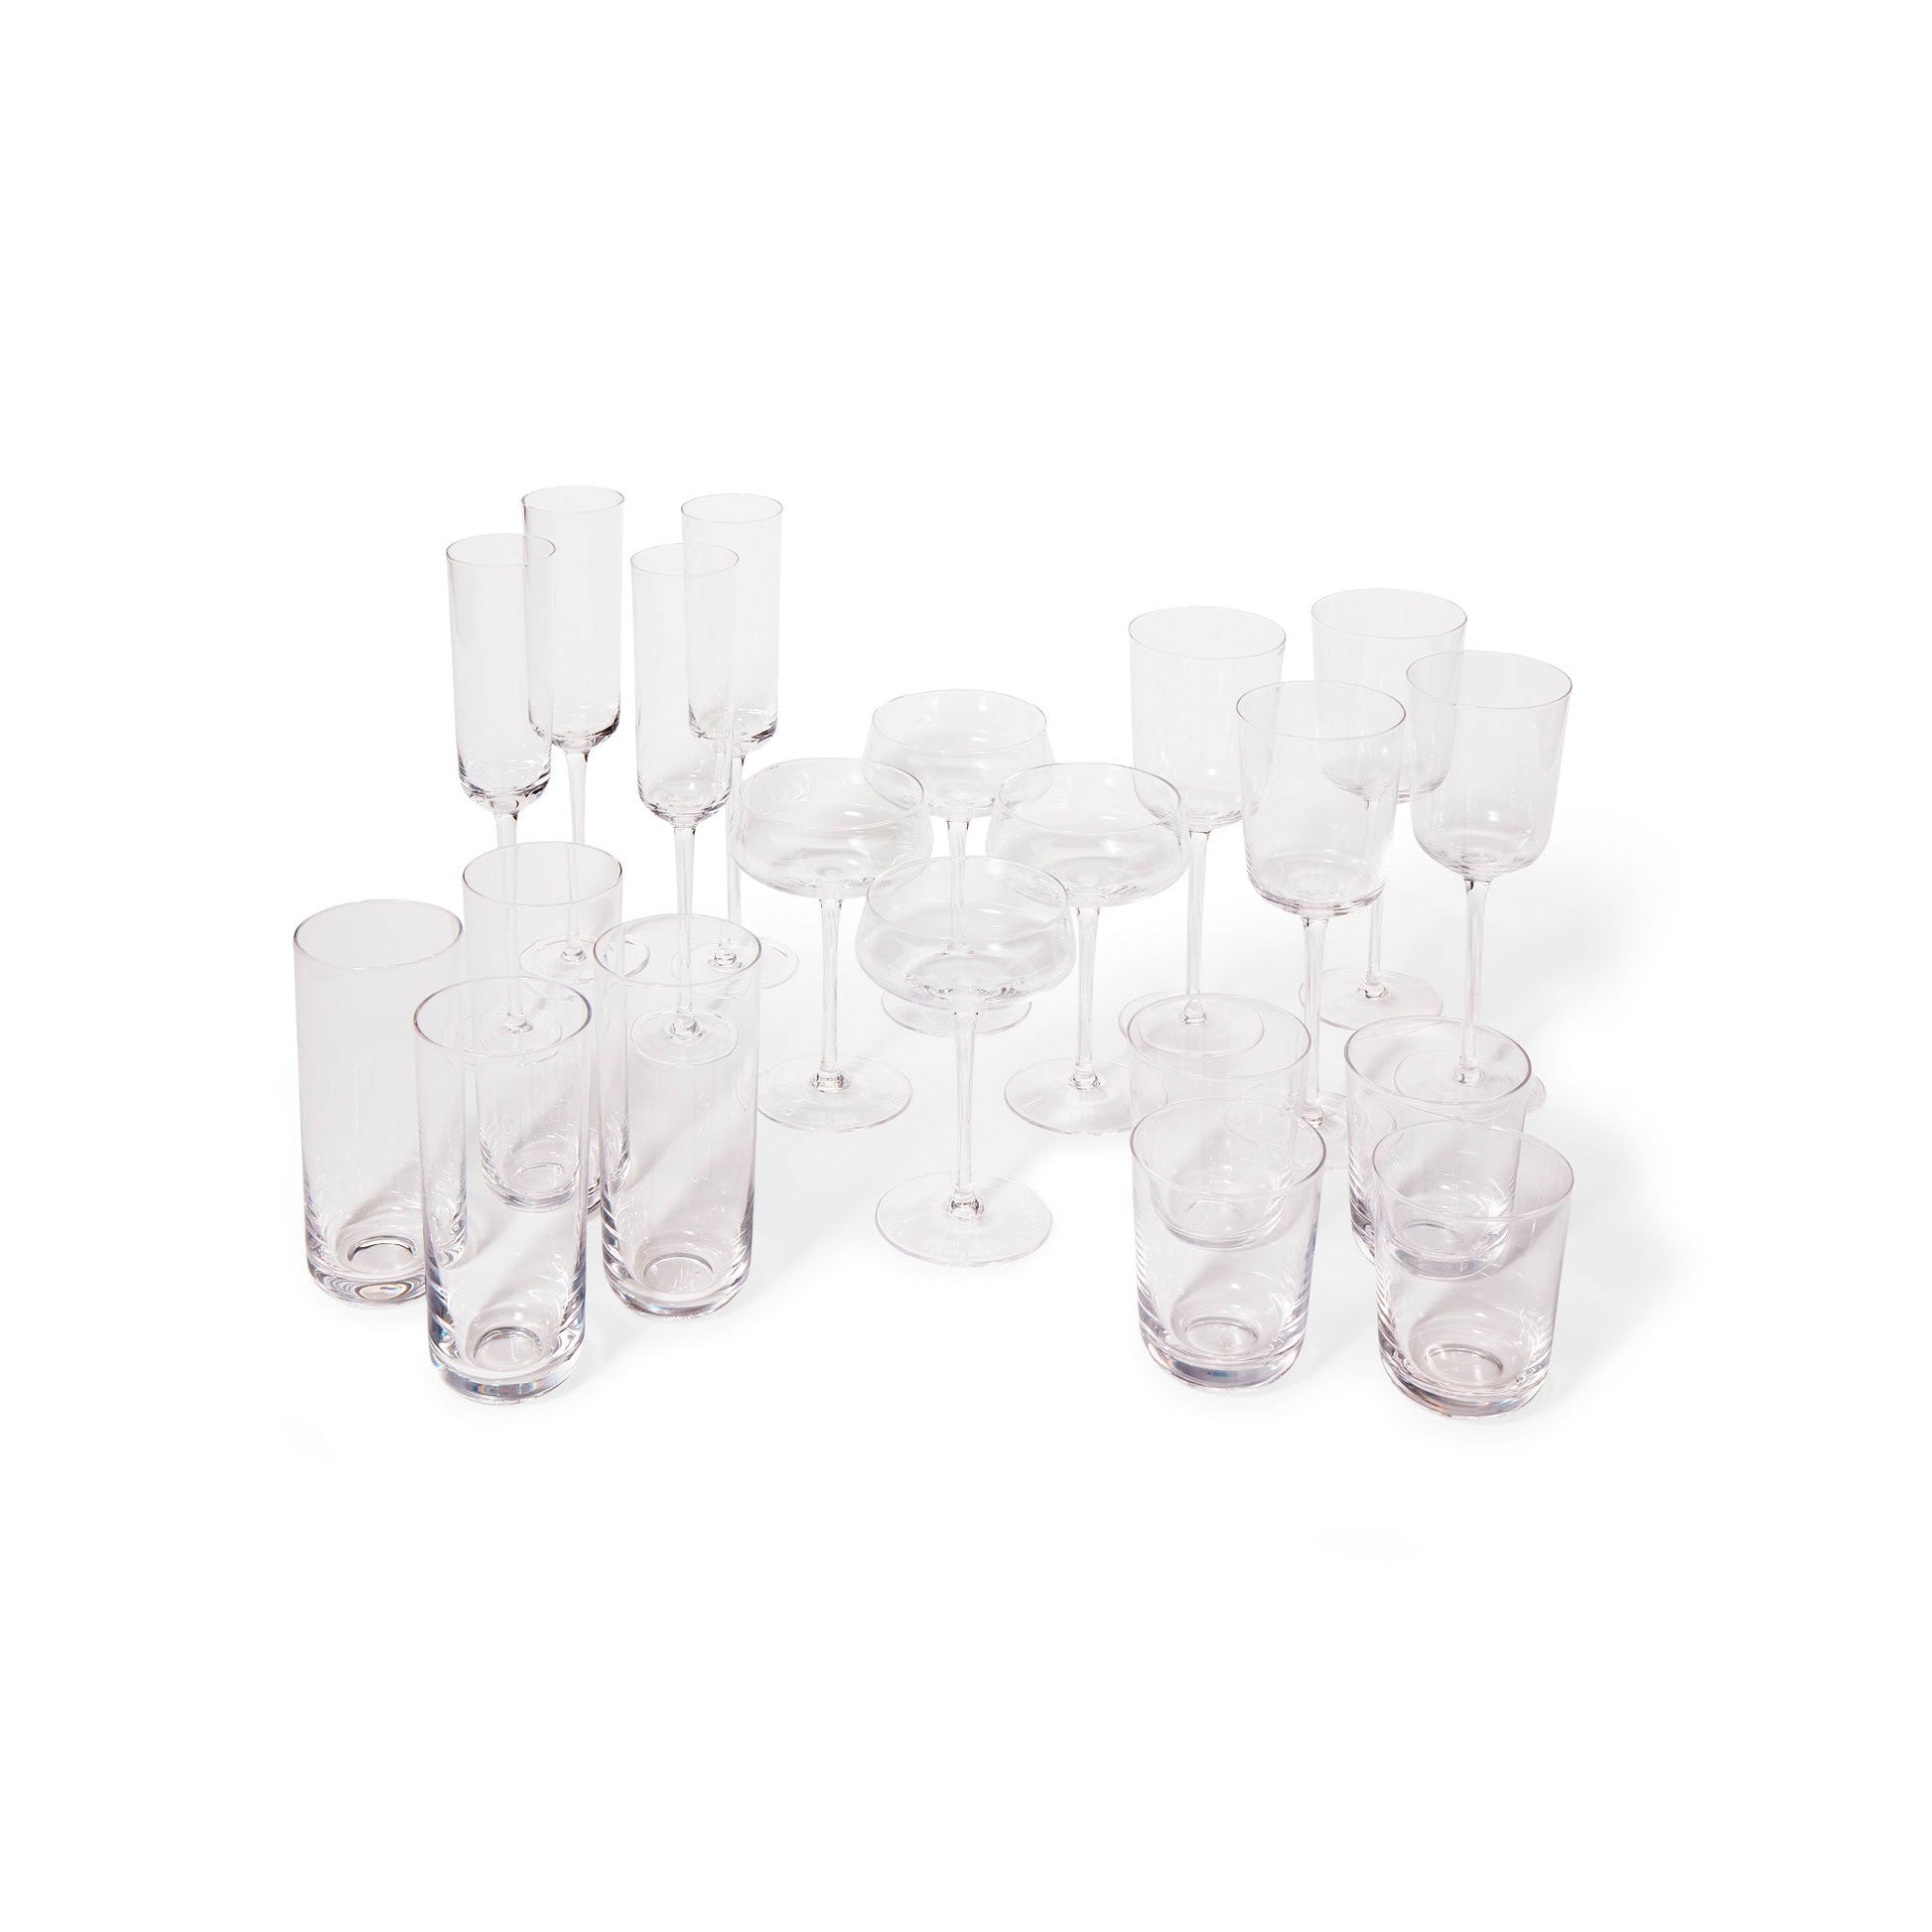 Leeway Home Flute Glass - Set of 4